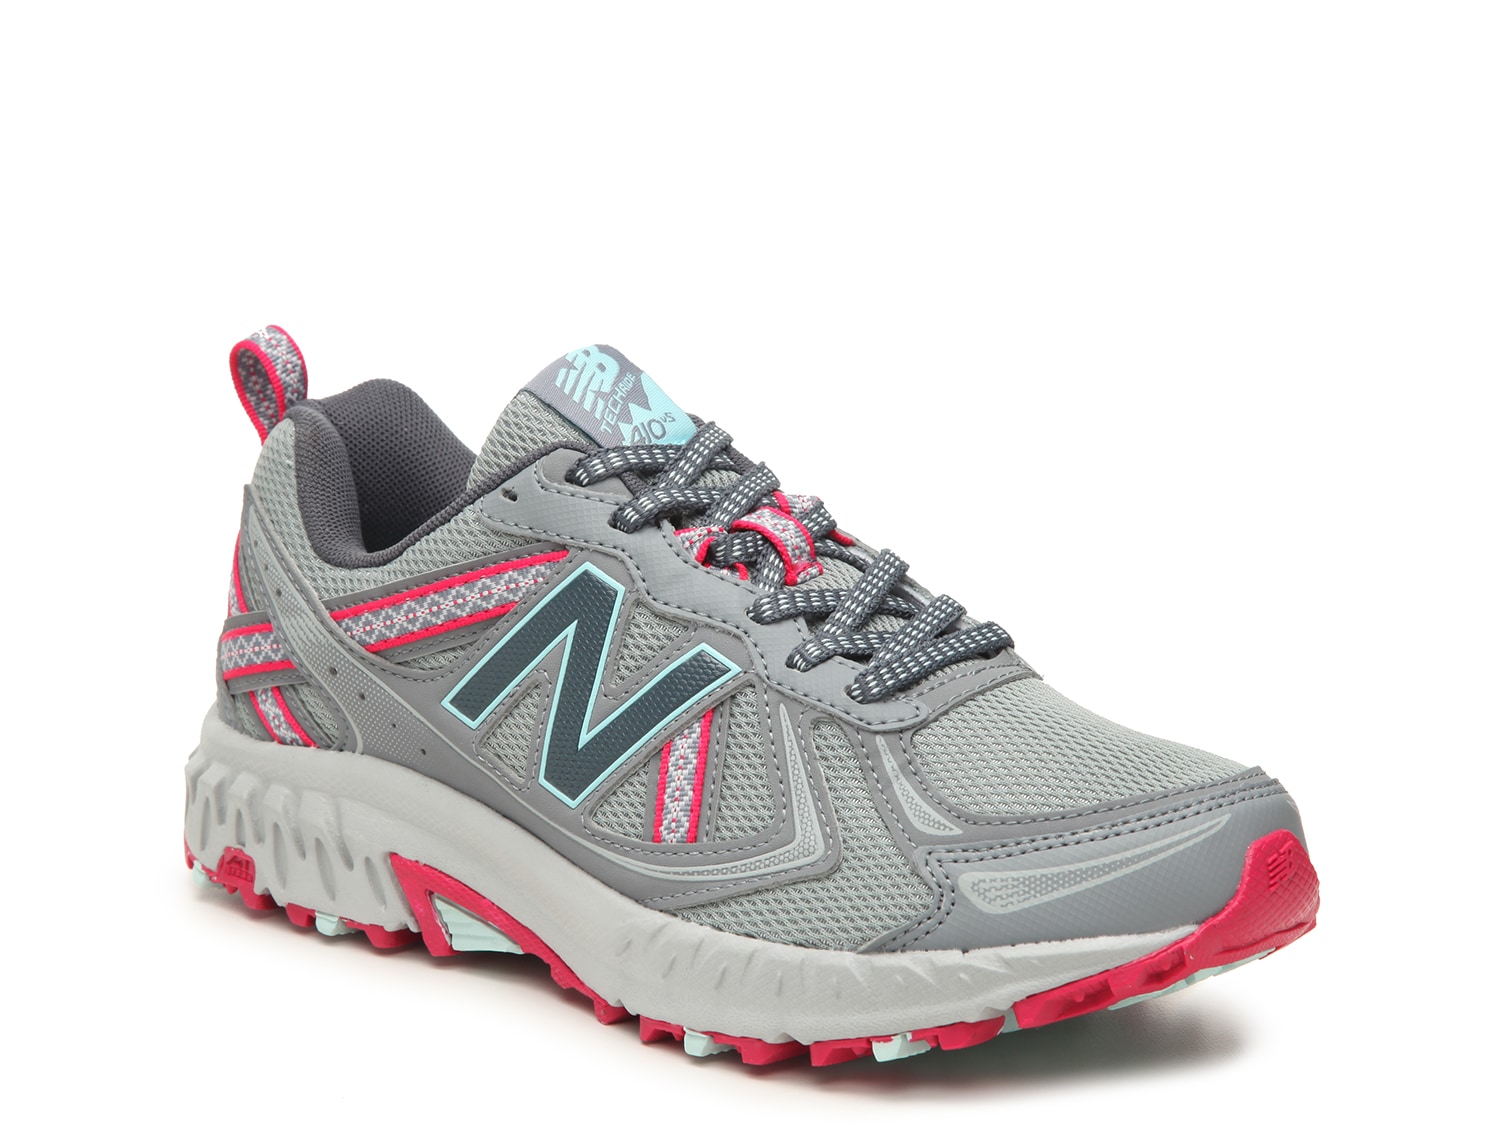 New Balance 410 v5 Trail Running Shoe - Women's | DSW